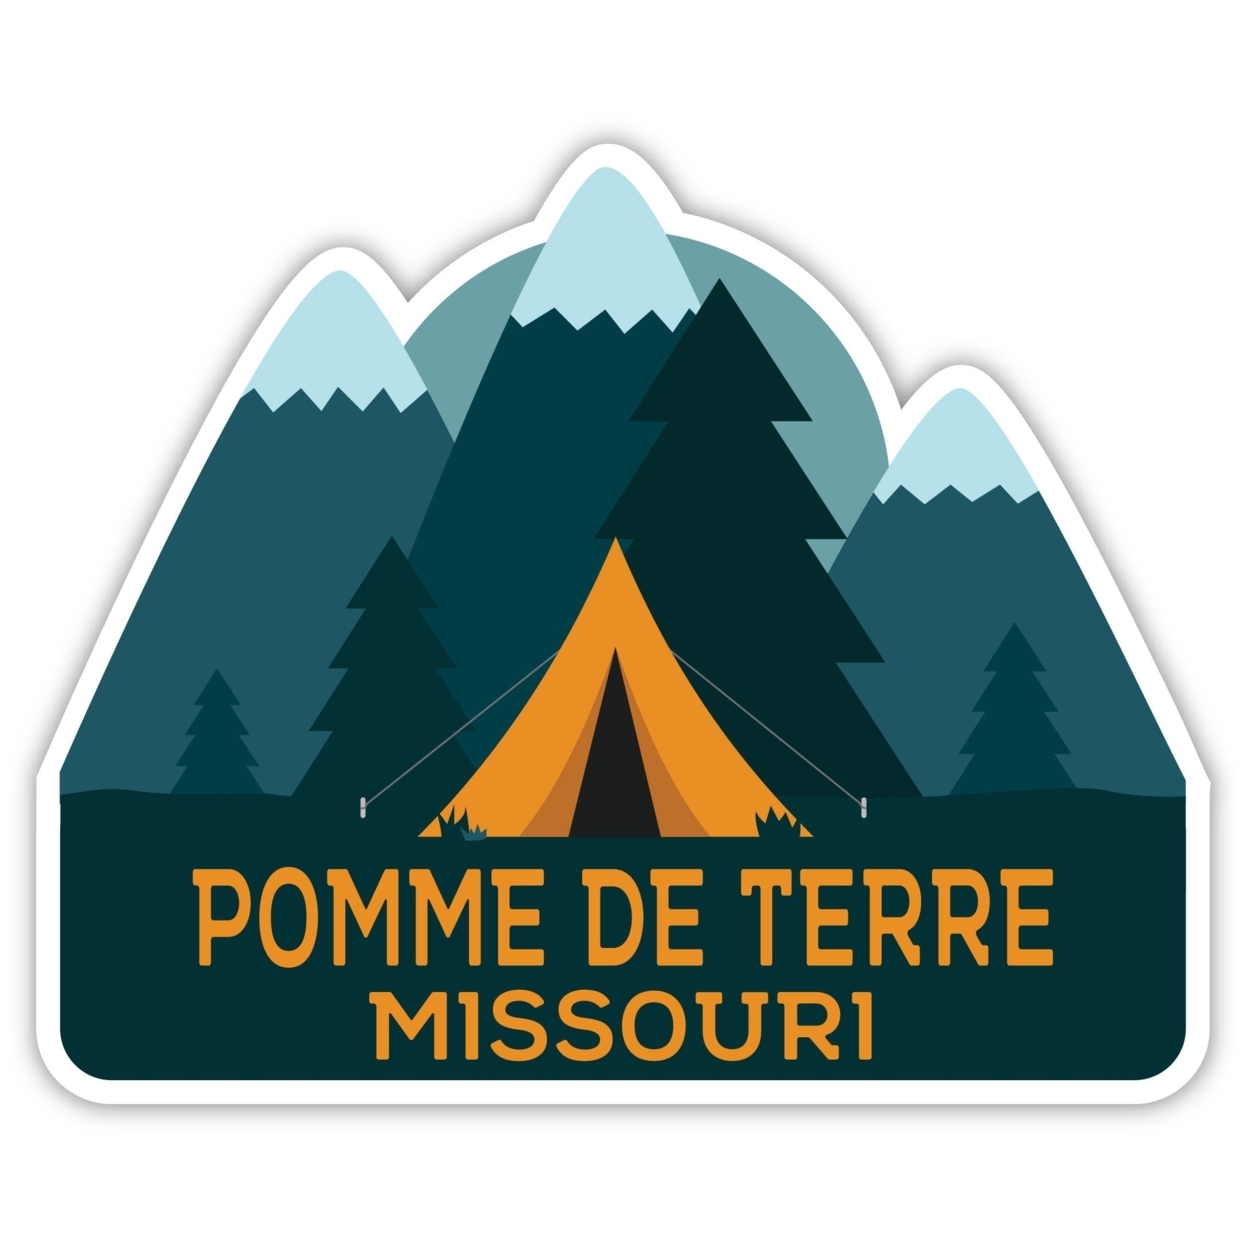 Pomme De Terre Missouri Souvenir Decorative Stickers (Choose Theme And Size) - Single Unit, 4-Inch, Tent